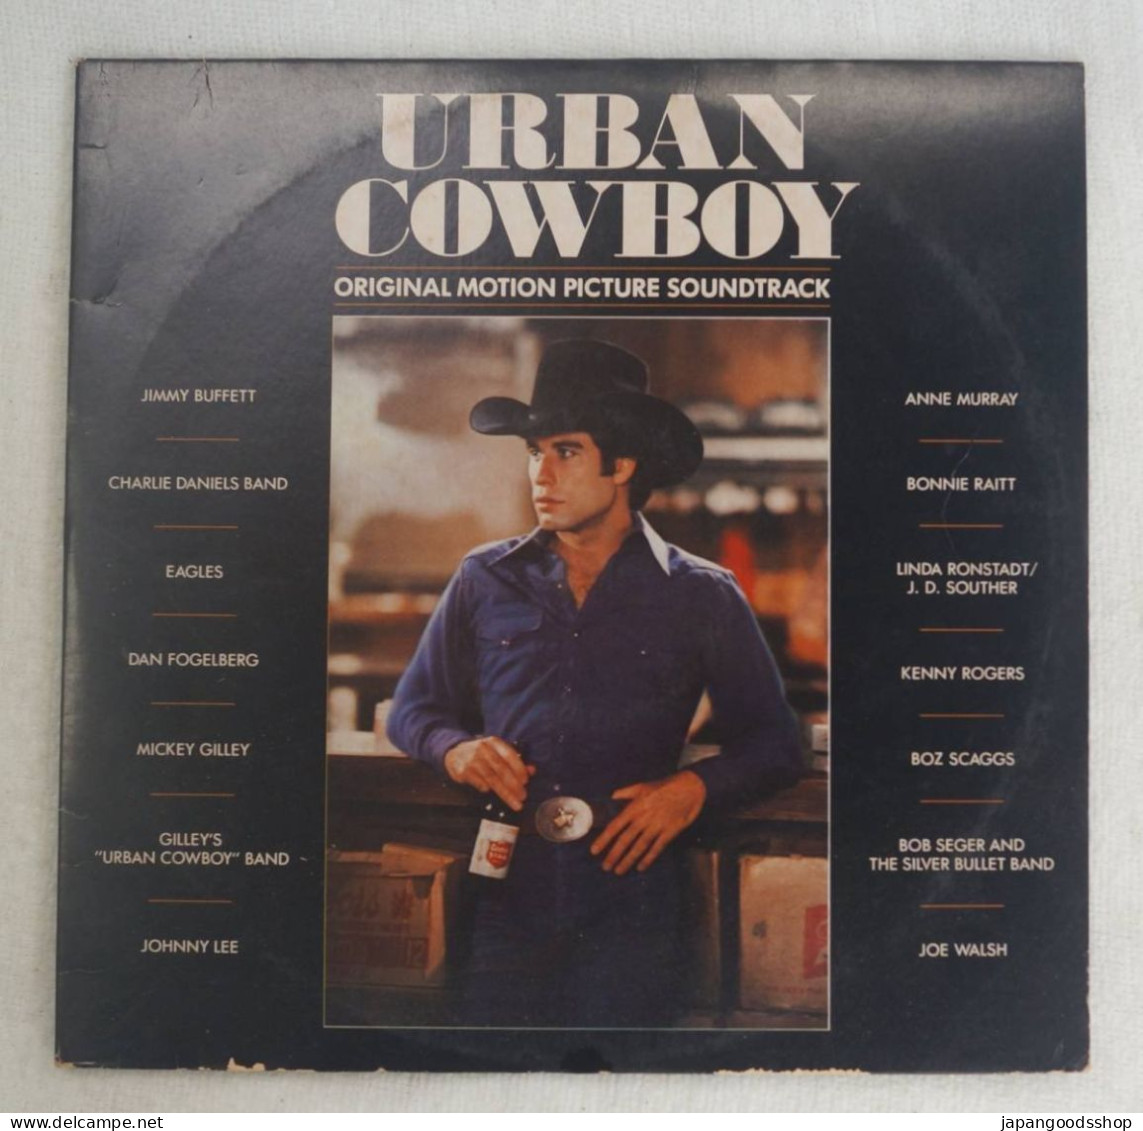 Vinyl LP : Urban Cow Boy OST ( Asylum Records DP-90002 ) - Música De Peliculas